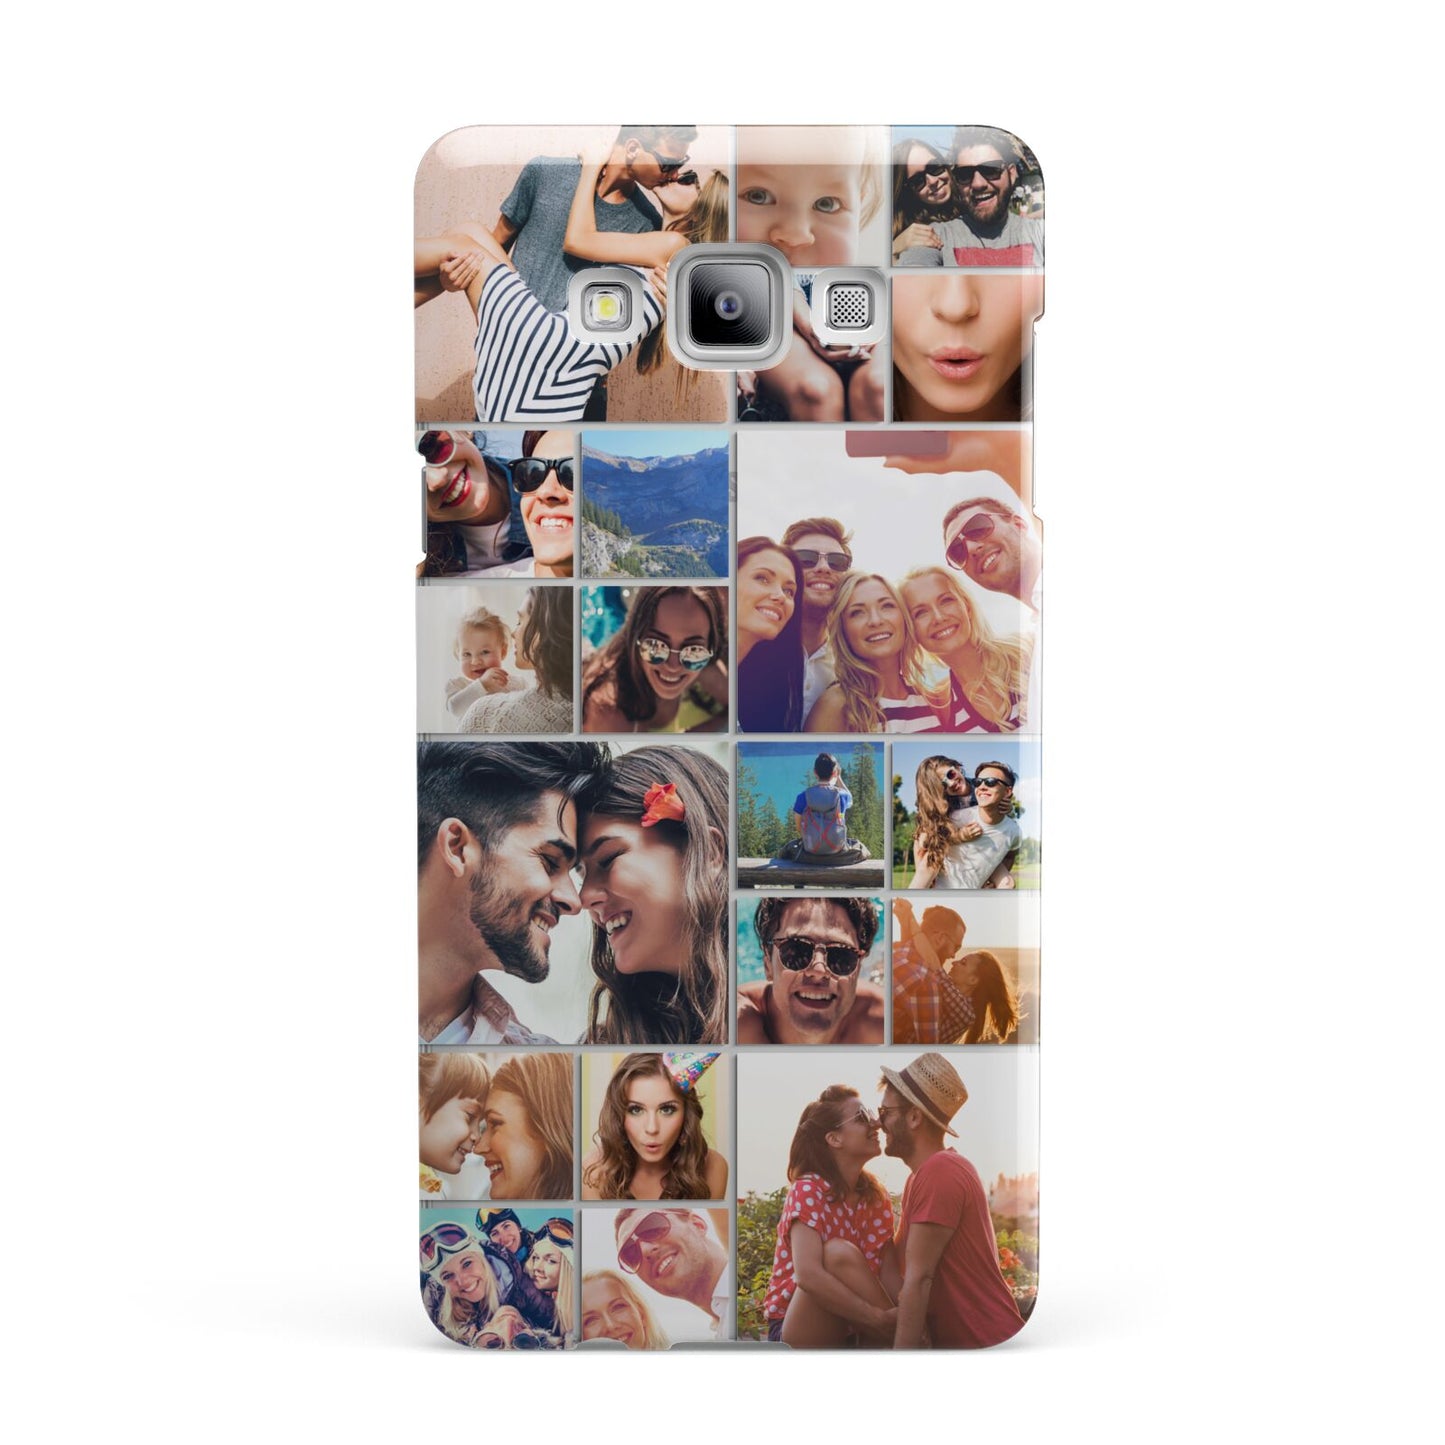 Photo Grid Samsung Galaxy A7 2015 Case